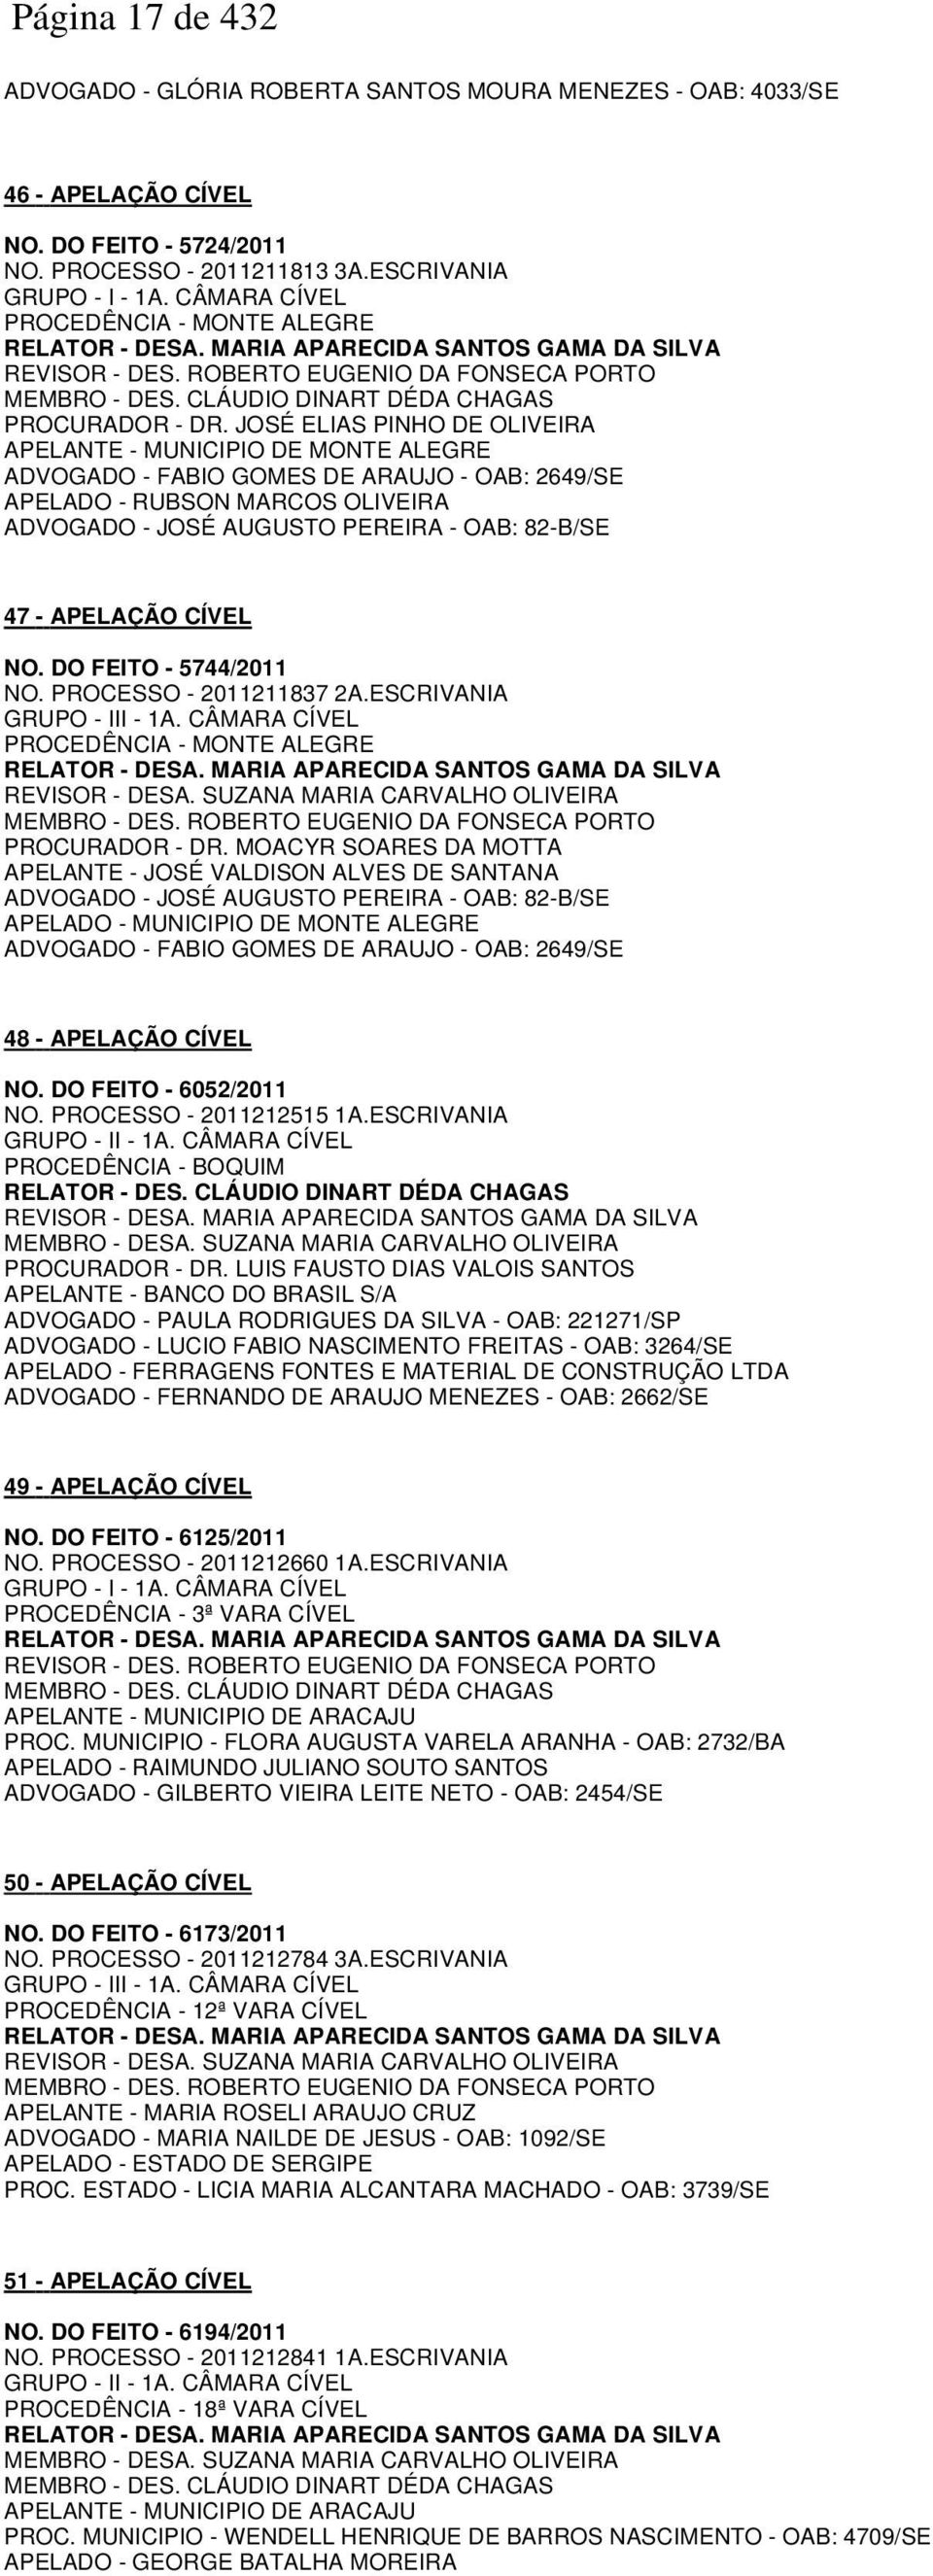 JOSÉ ELIAS PINHO DE OLIVEIRA APELANTE - MUNICIPIO DE MONTE ALEGRE ADVOGADO - FABIO GOMES DE ARAUJO - OAB: 2649/SE APELADO - RUBSON MARCOS OLIVEIRA ADVOGADO - JOSÉ AUGUSTO PEREIRA - OAB: 82-B/SE 47 -